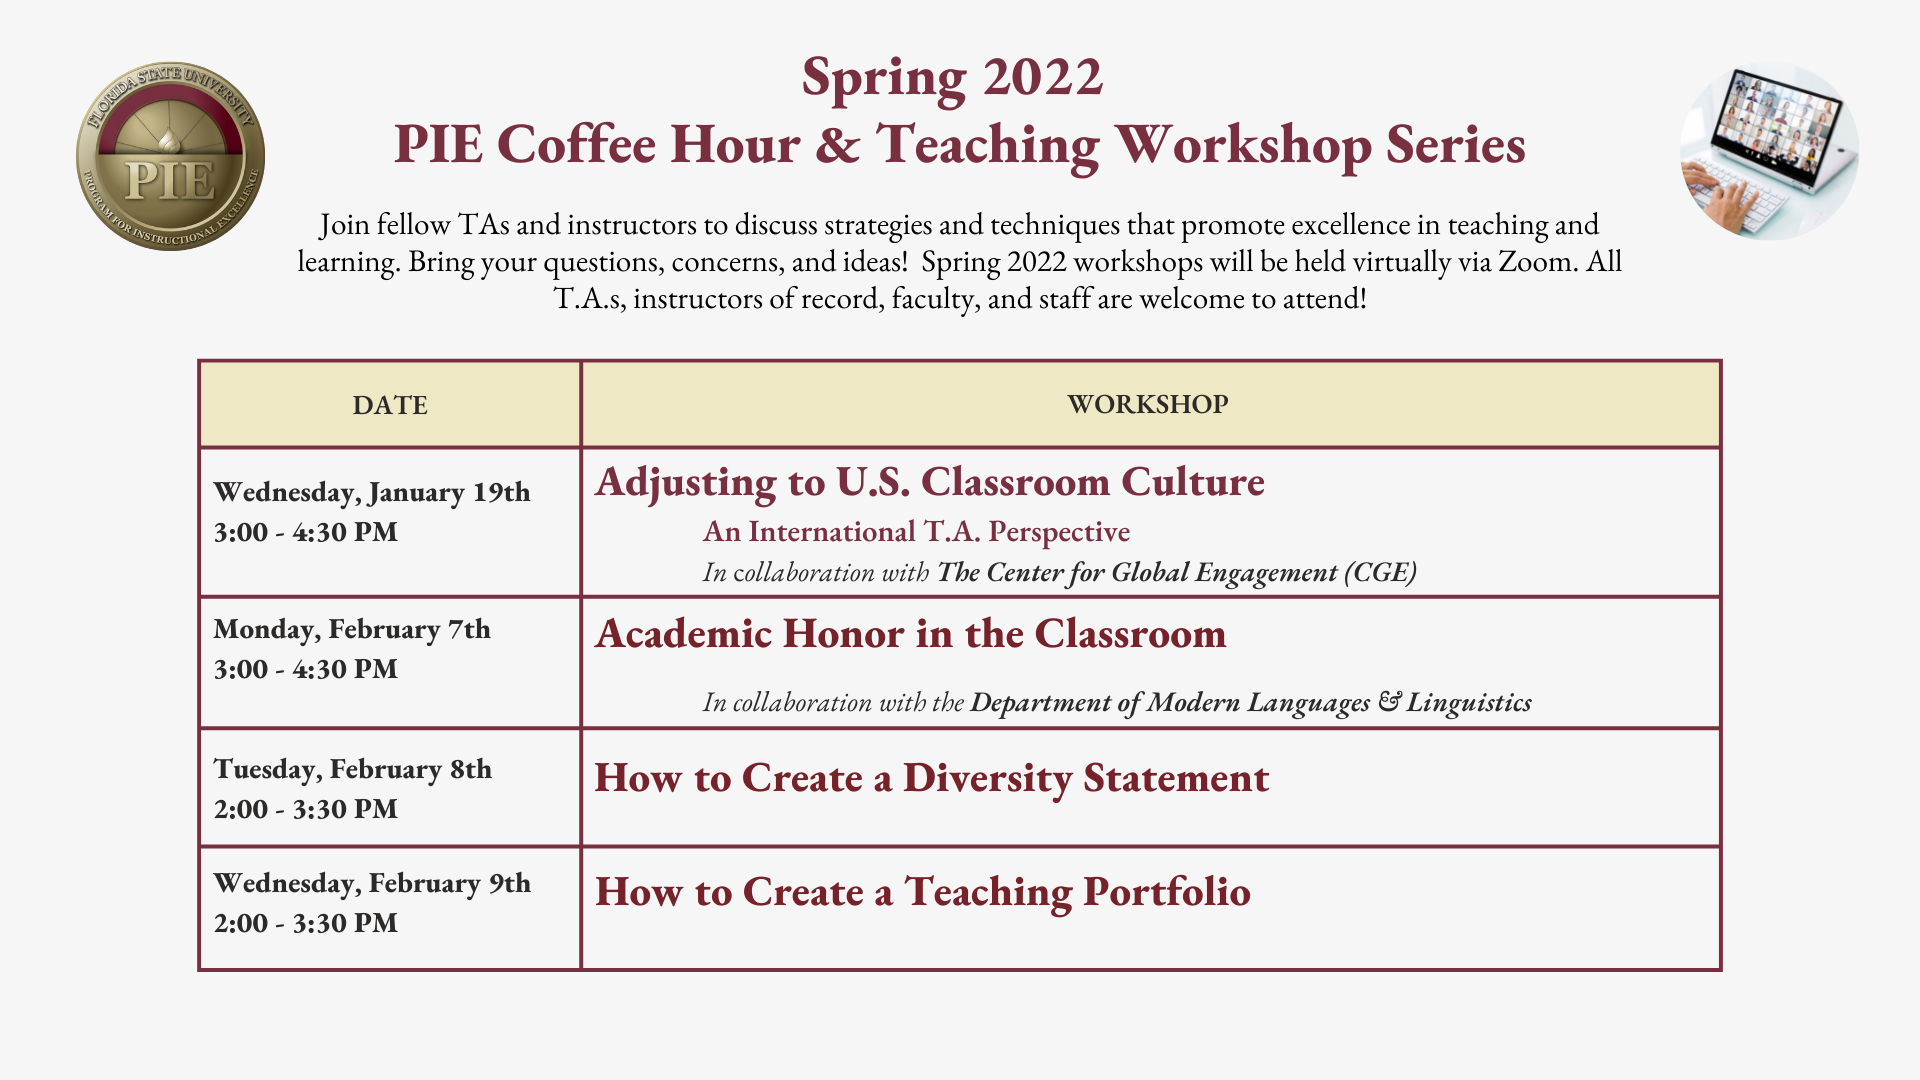 Spring 2022 PIE Coffee Hour & Teaching Workshop Series Dates 